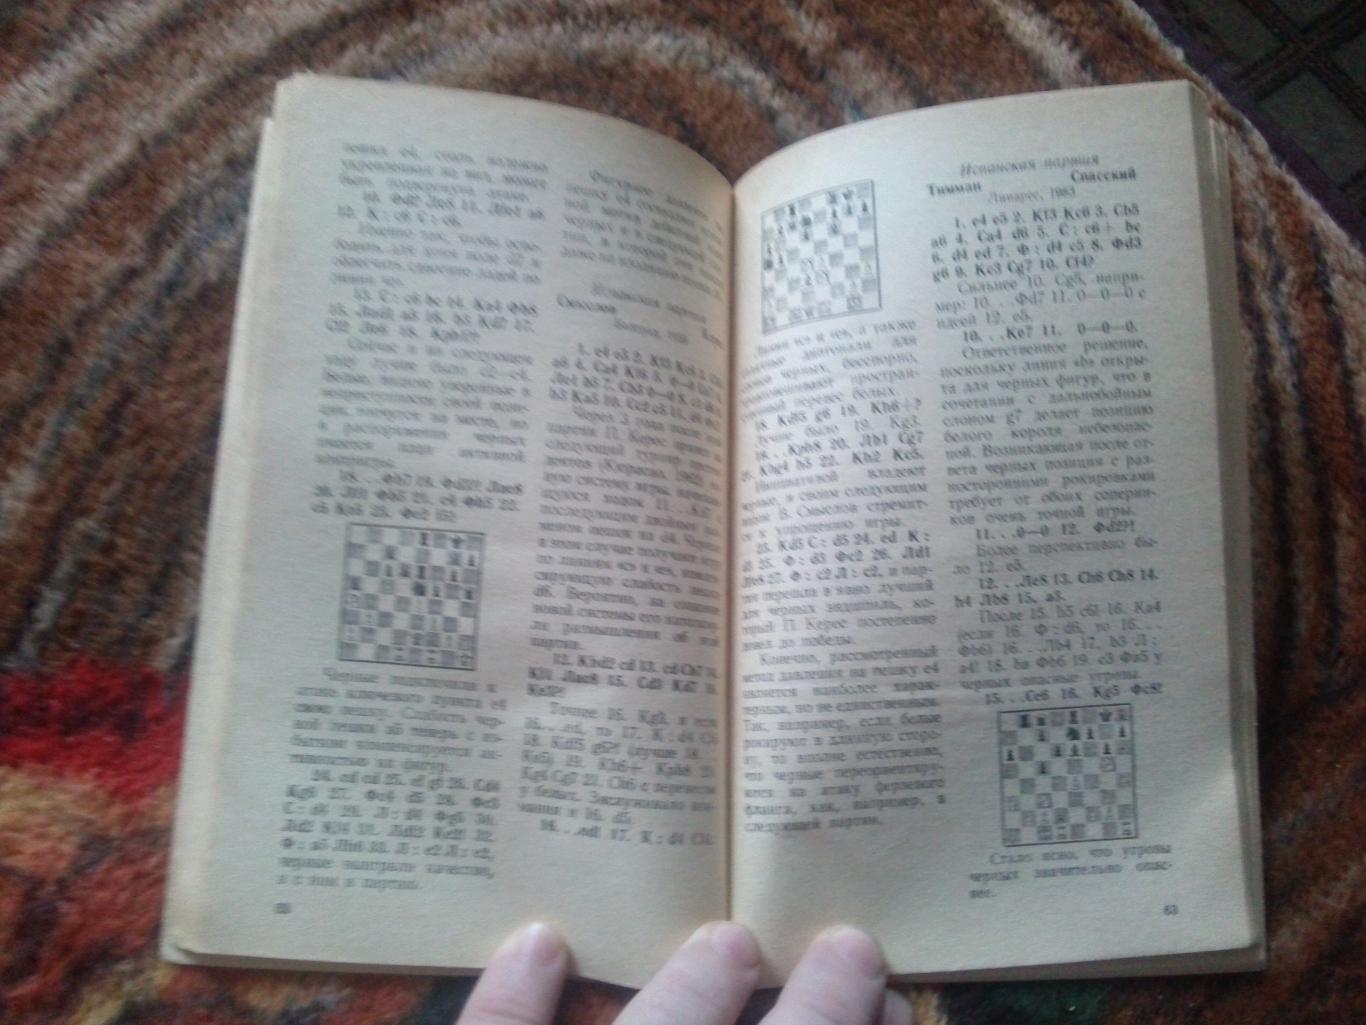 Шахматы : Б.А. Злотник -Типовые позиции миттельшпиля1986 г. ФиС (Спорт) 6